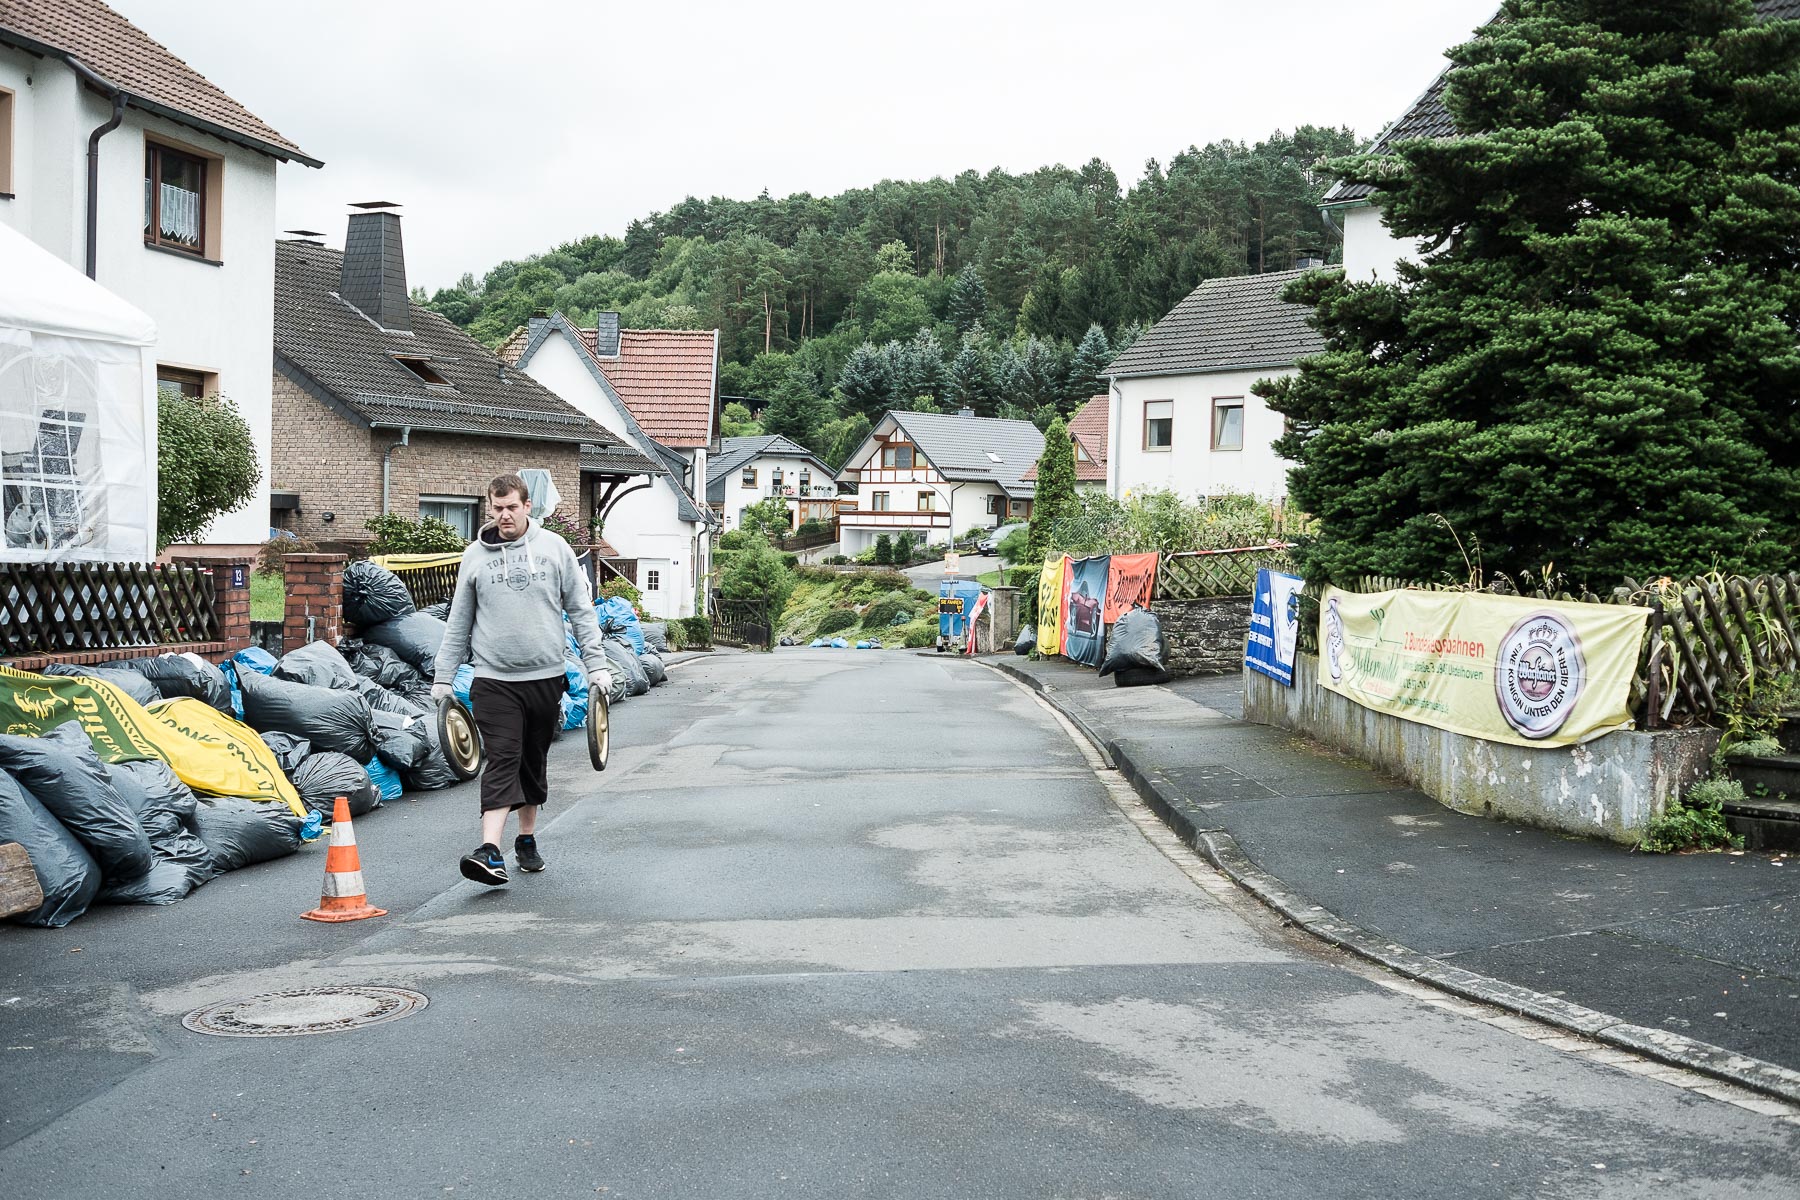 16.08.15-Seifenkistenrennen in Ahrdorf, Eifel